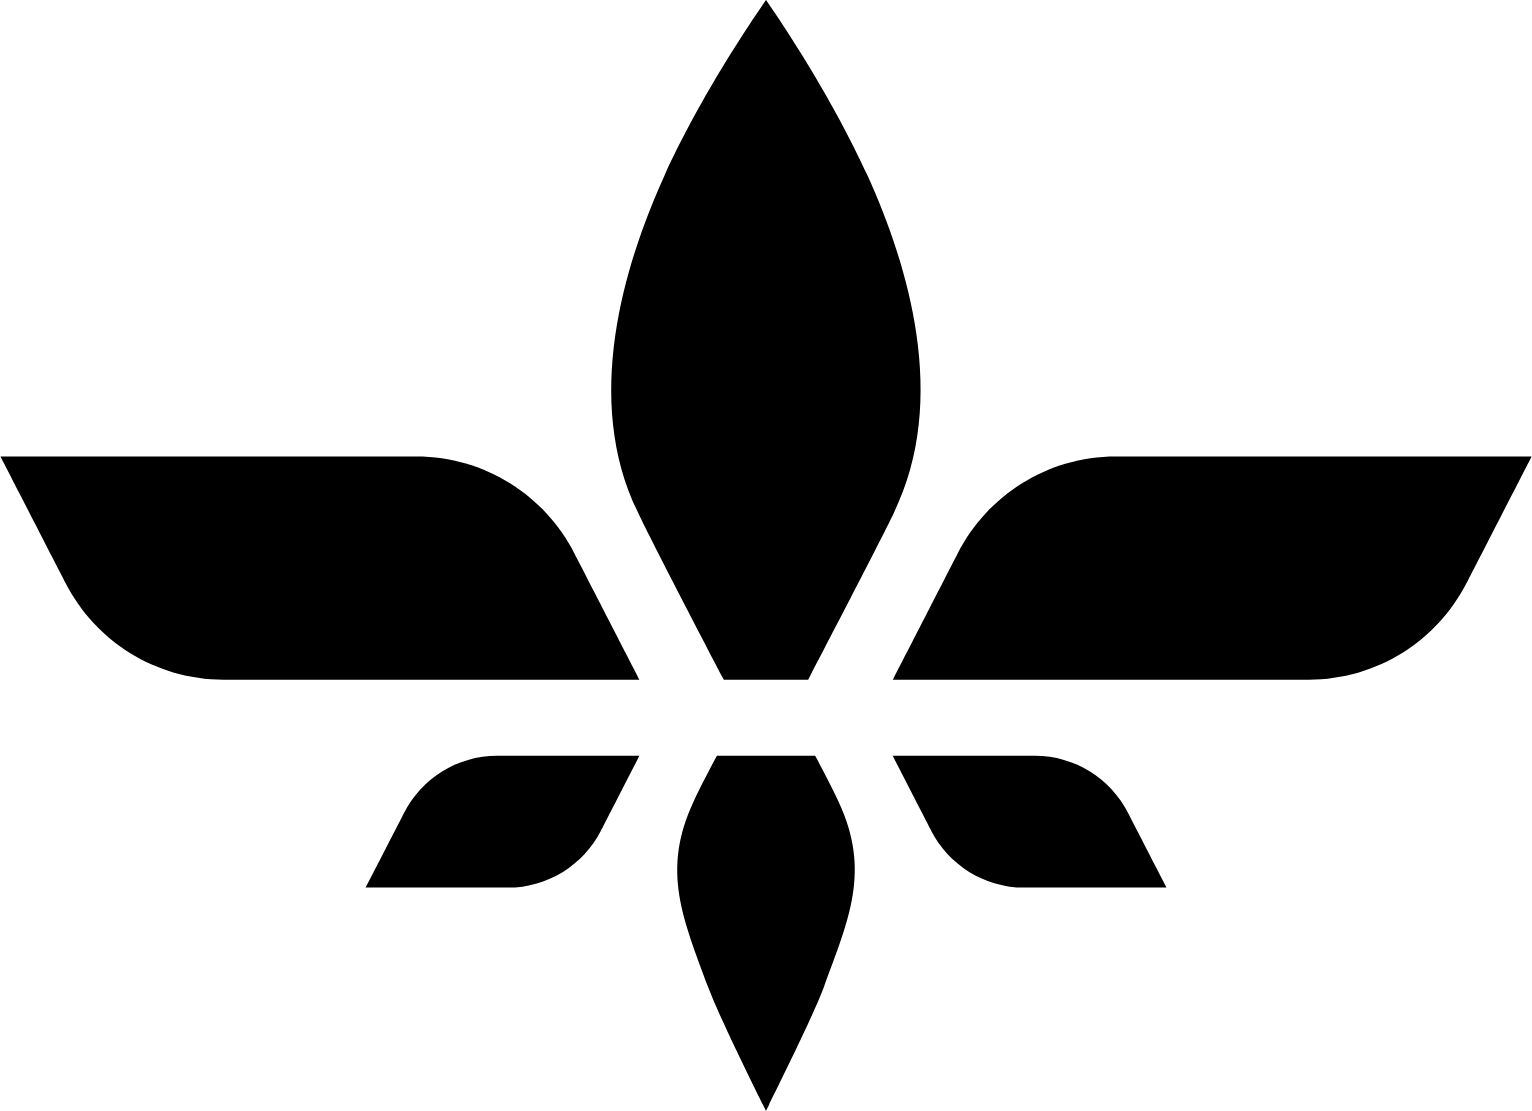 Lilium logo (PNG transparent)